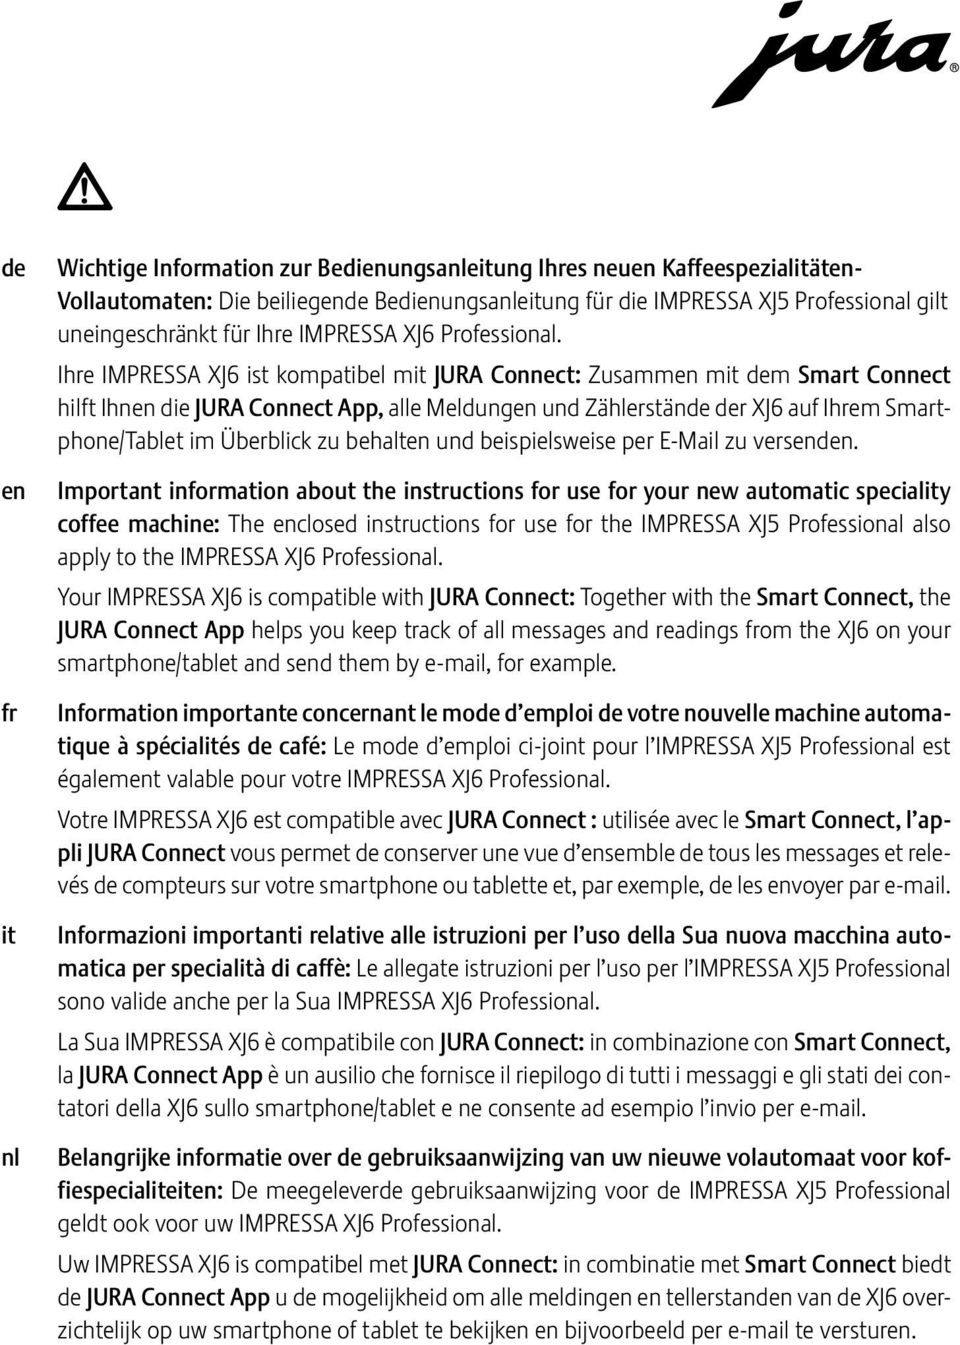 Ihre IMPRSSA XJ6 ist kompatibel mit JURA Connect: Zusammen mit dem Smart Connect hilft Ihnen die JURA Connect App, alle Meldungen und Zählerstände der XJ6 auf Ihrem Smartphone/Tablet im Überblick zu